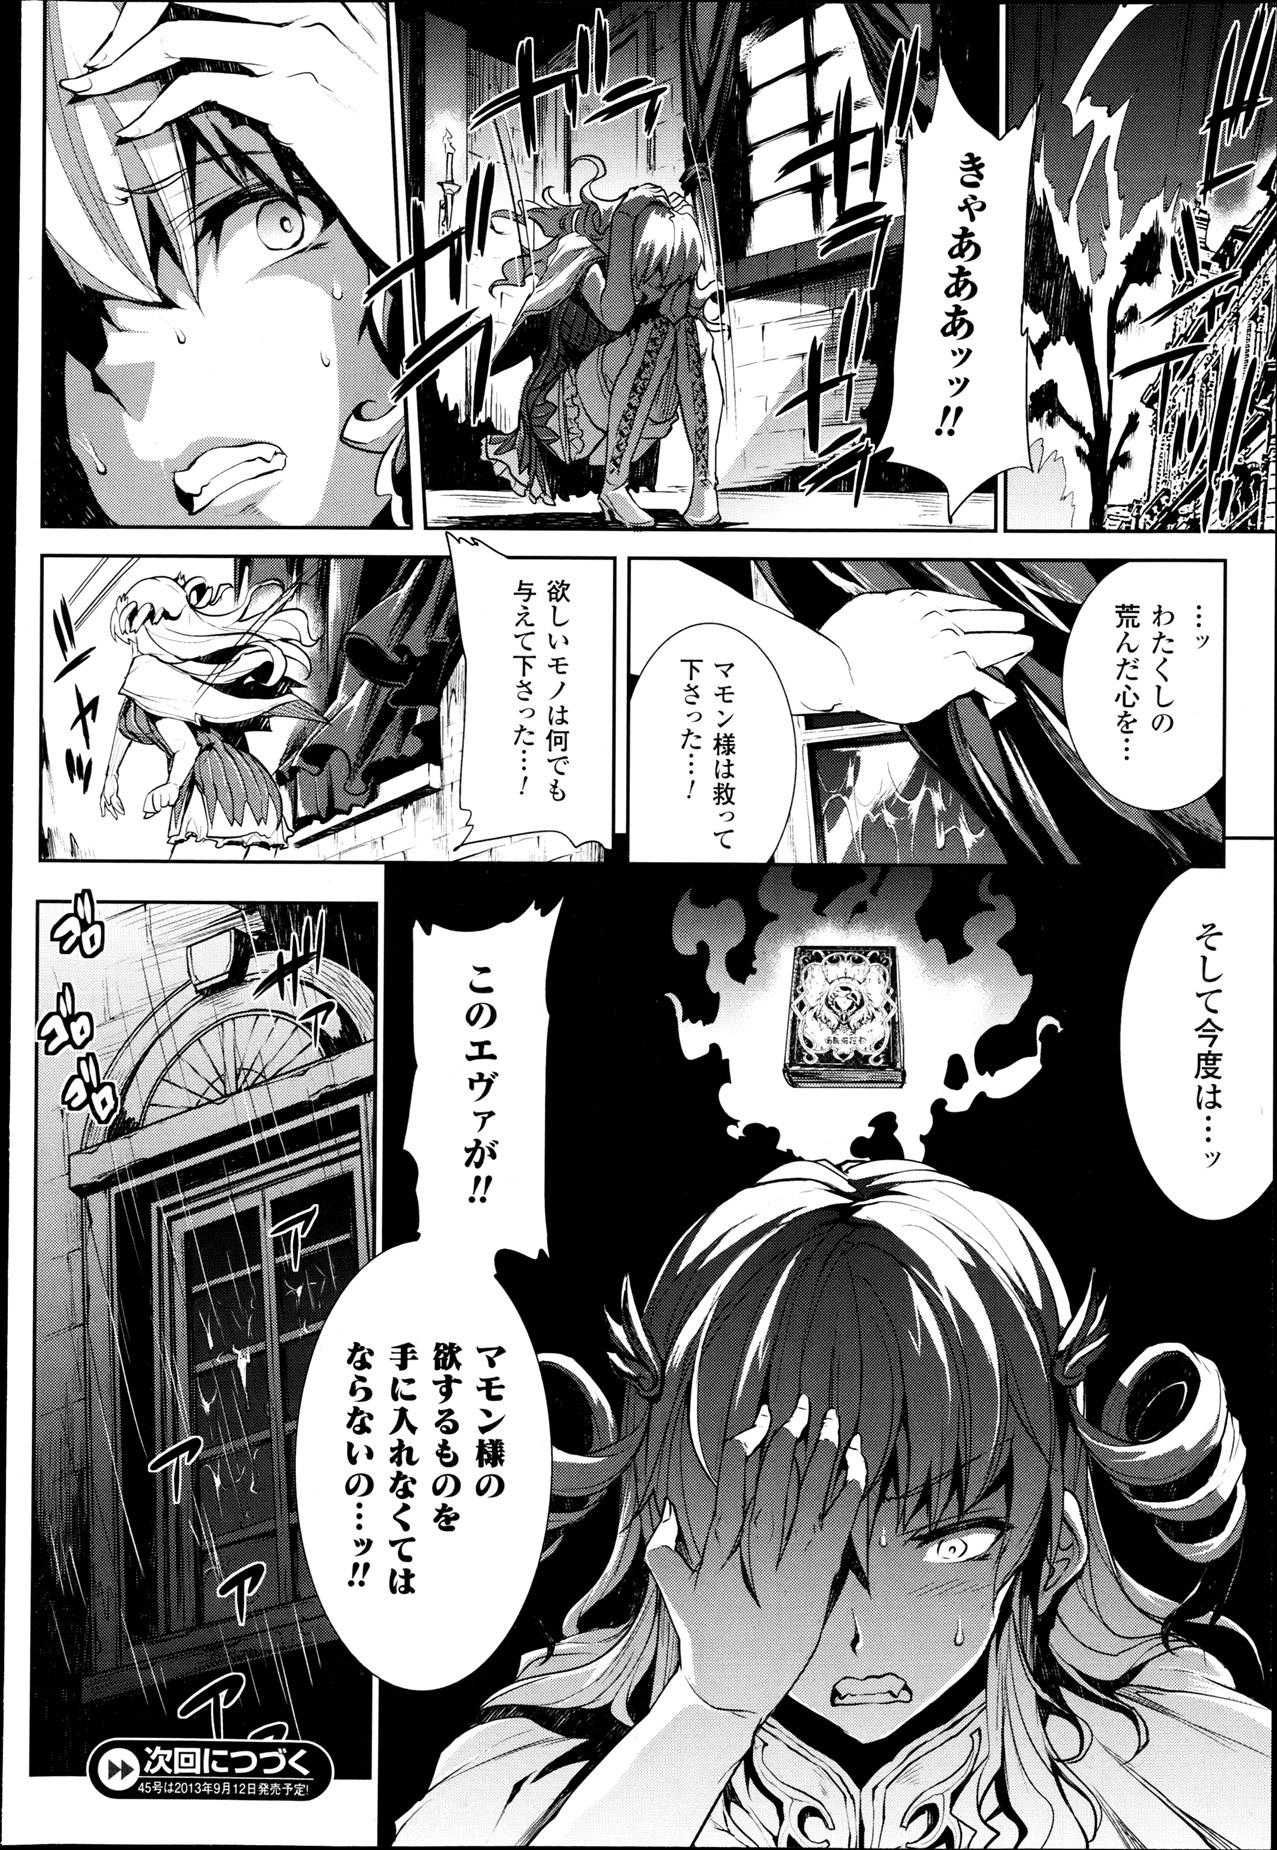 [Erect Sawaru] Shinkyoku no Grimoire -PANDRA saga 2nd story- Ch 07-9.5 26